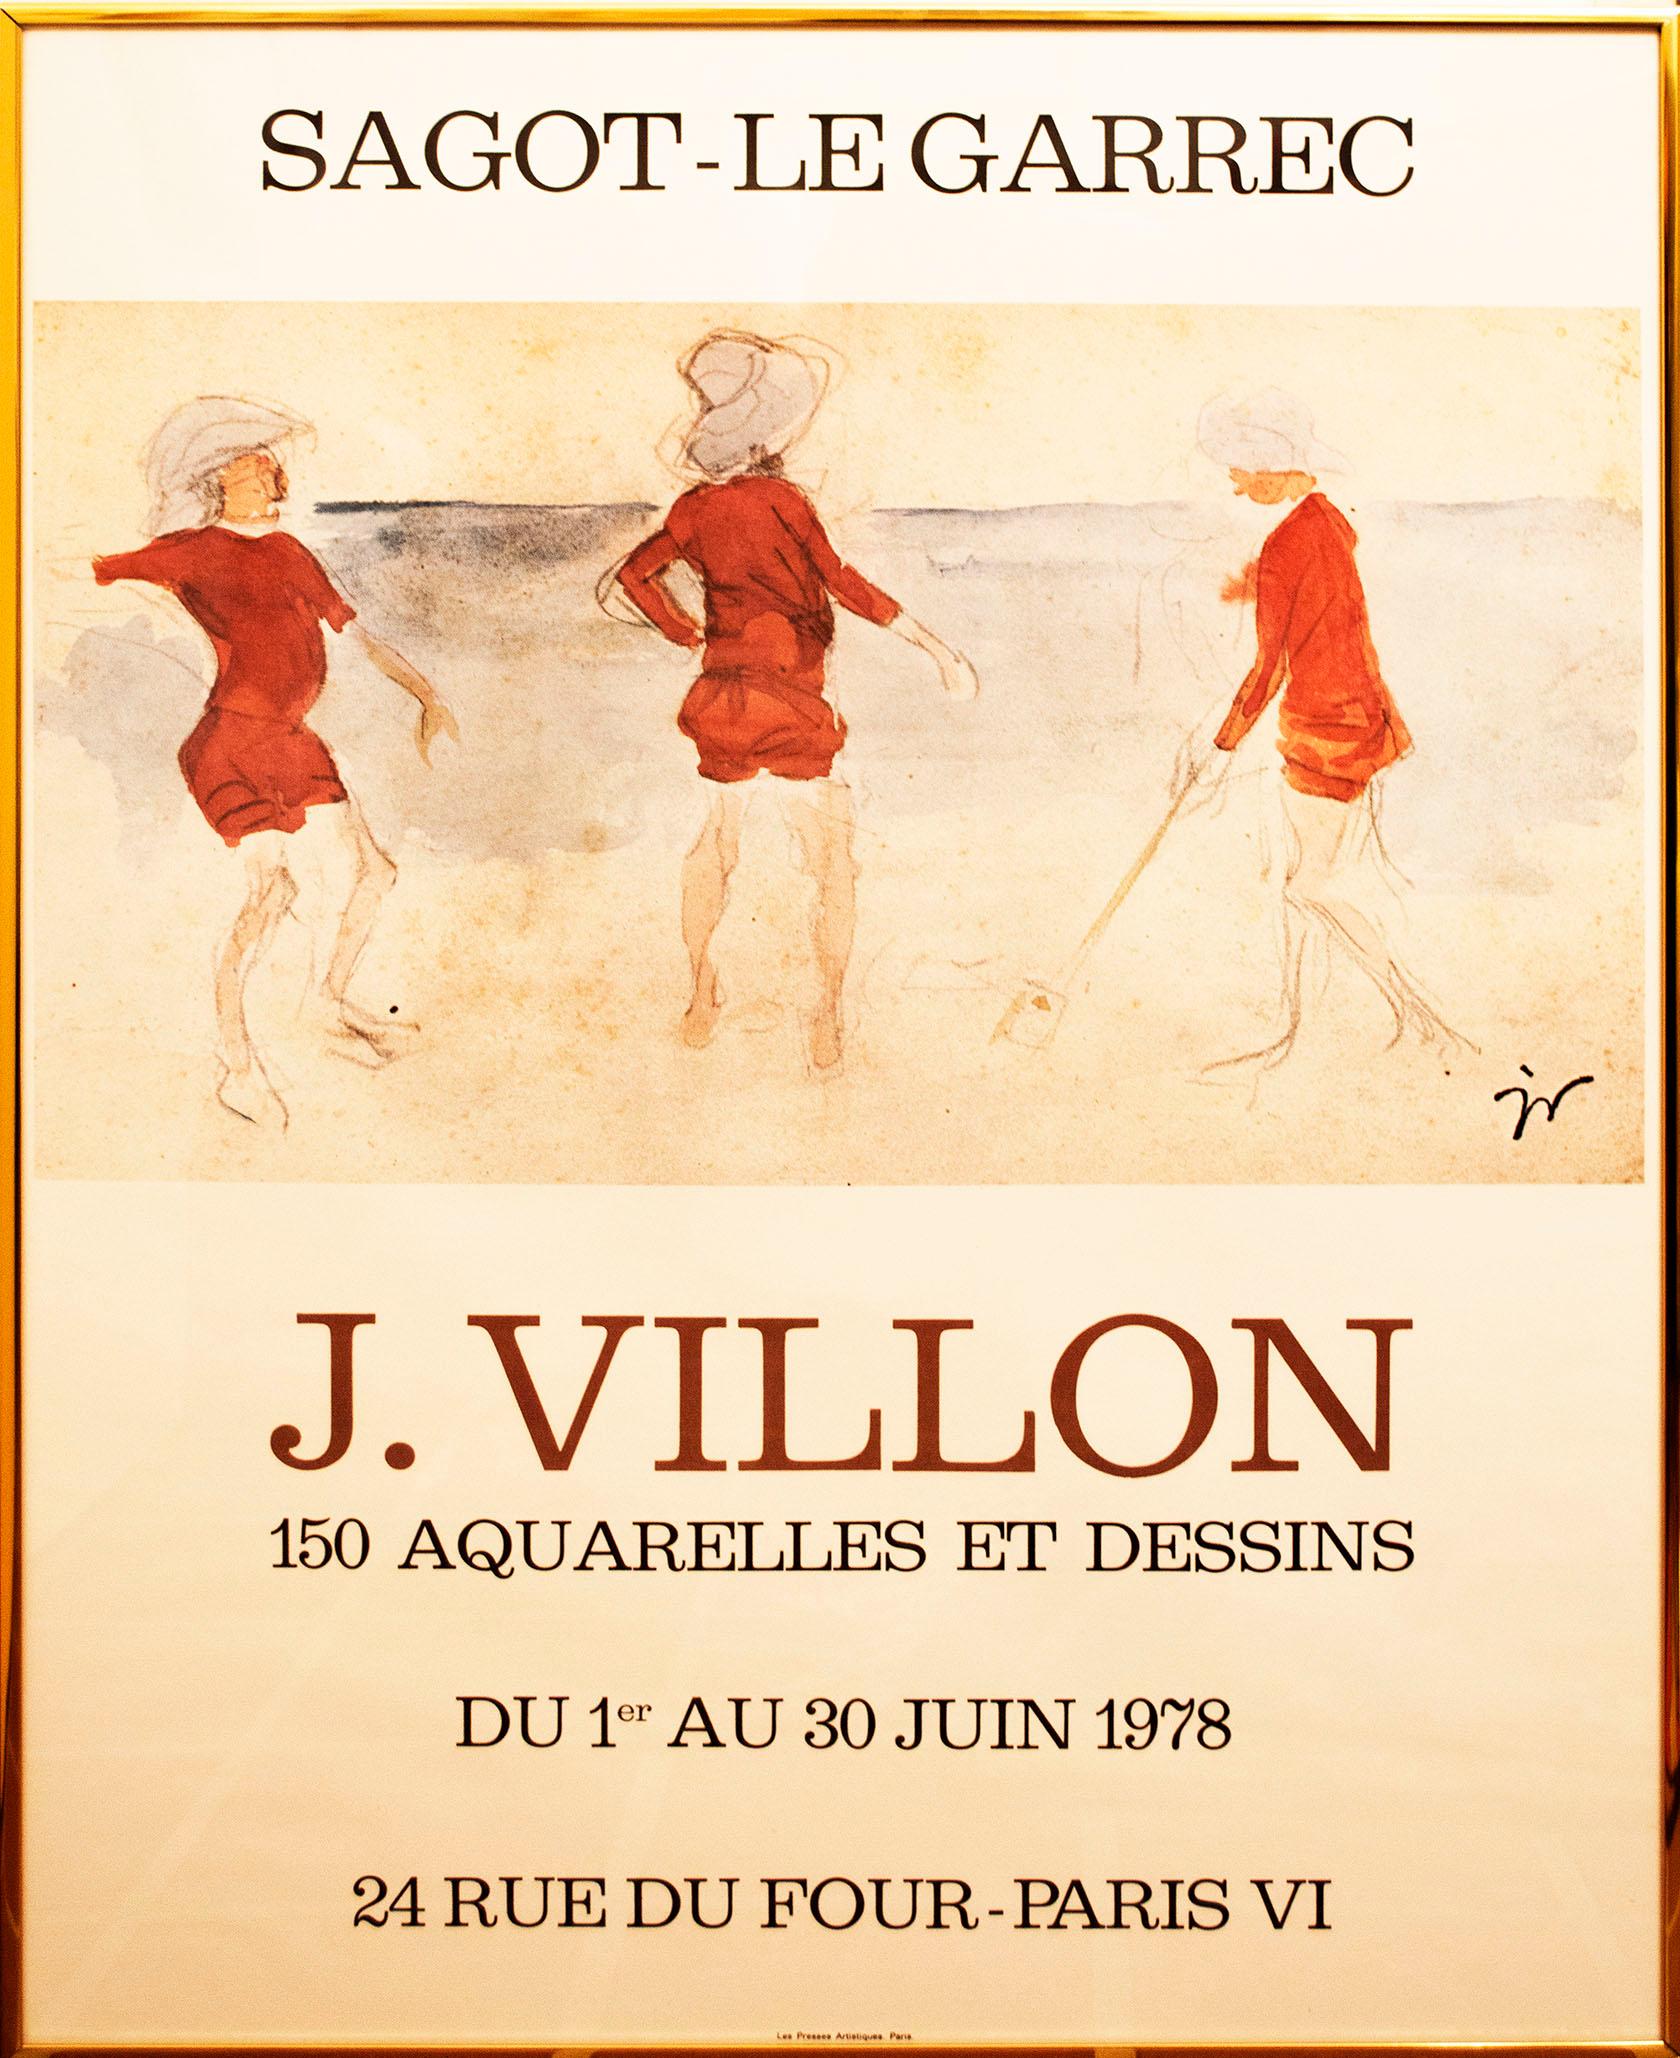 Jacques Villon Figurative Print - 'Sagot-Le Garrec' Poster